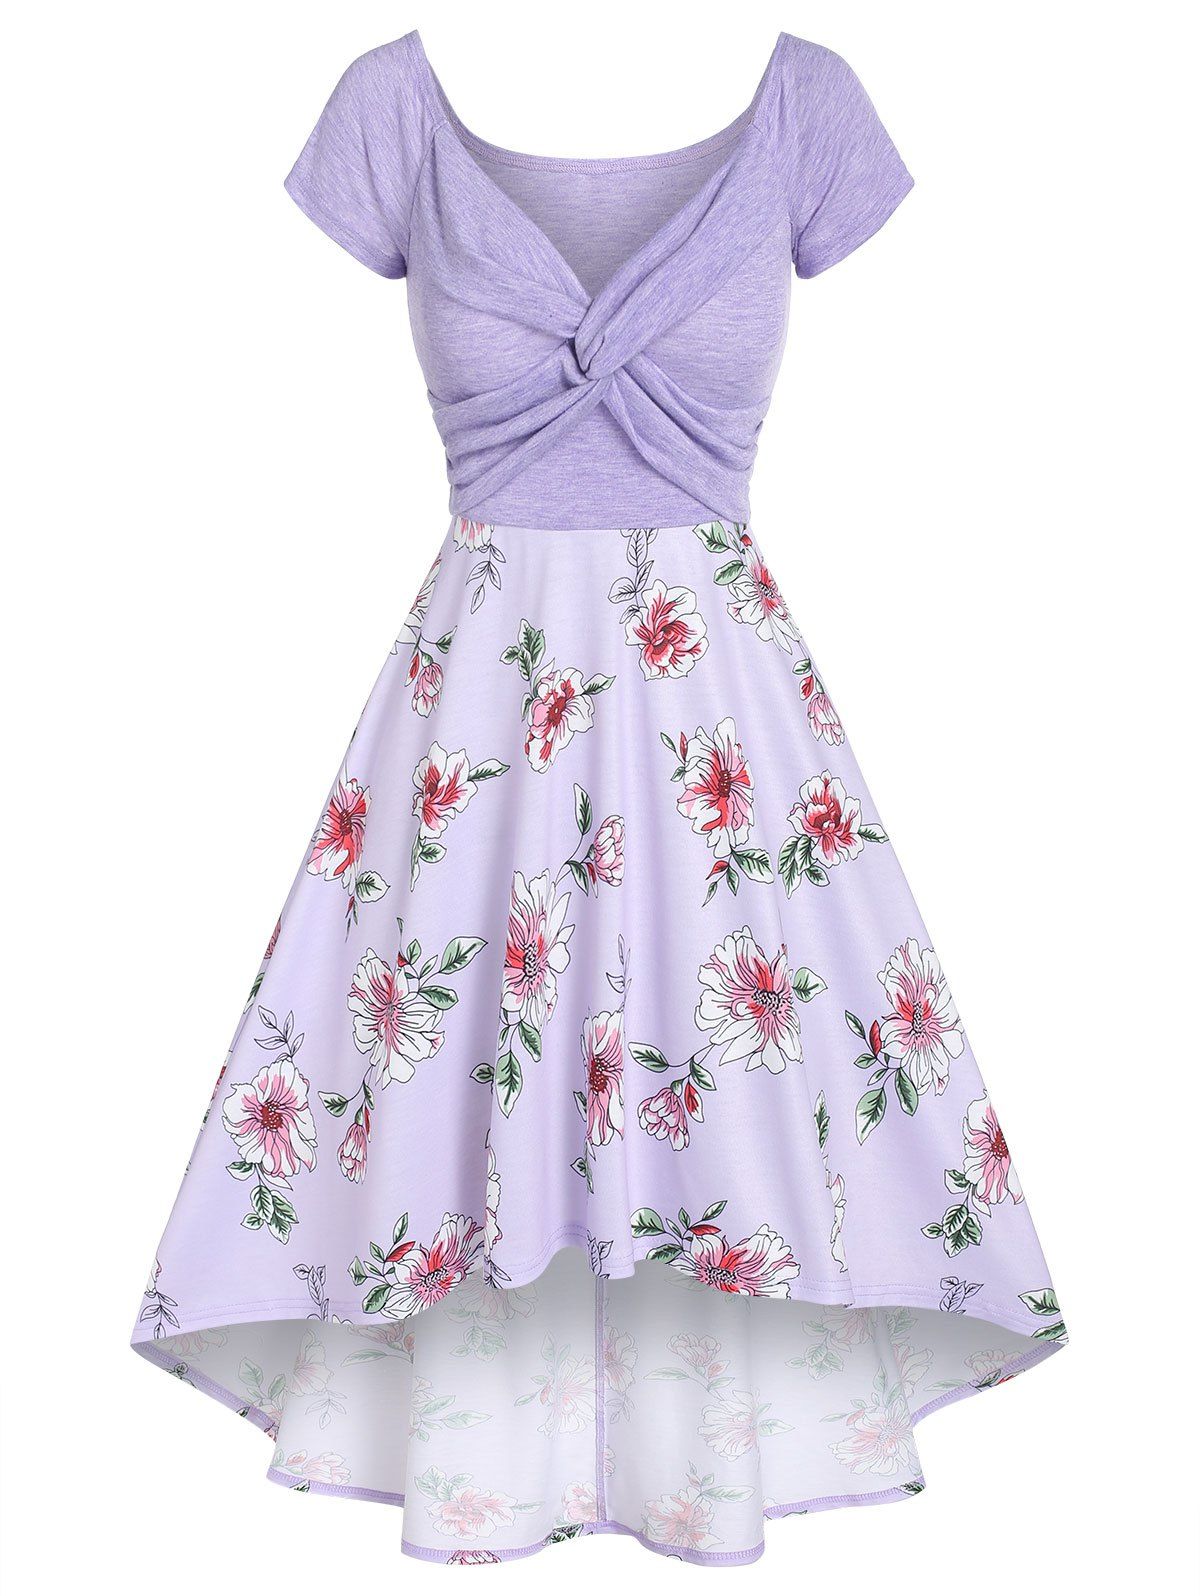 Flower Print Garden Party Dress Summer A Line Dress Front Twist High Low Dress - LIGHT PURPLE XXXL